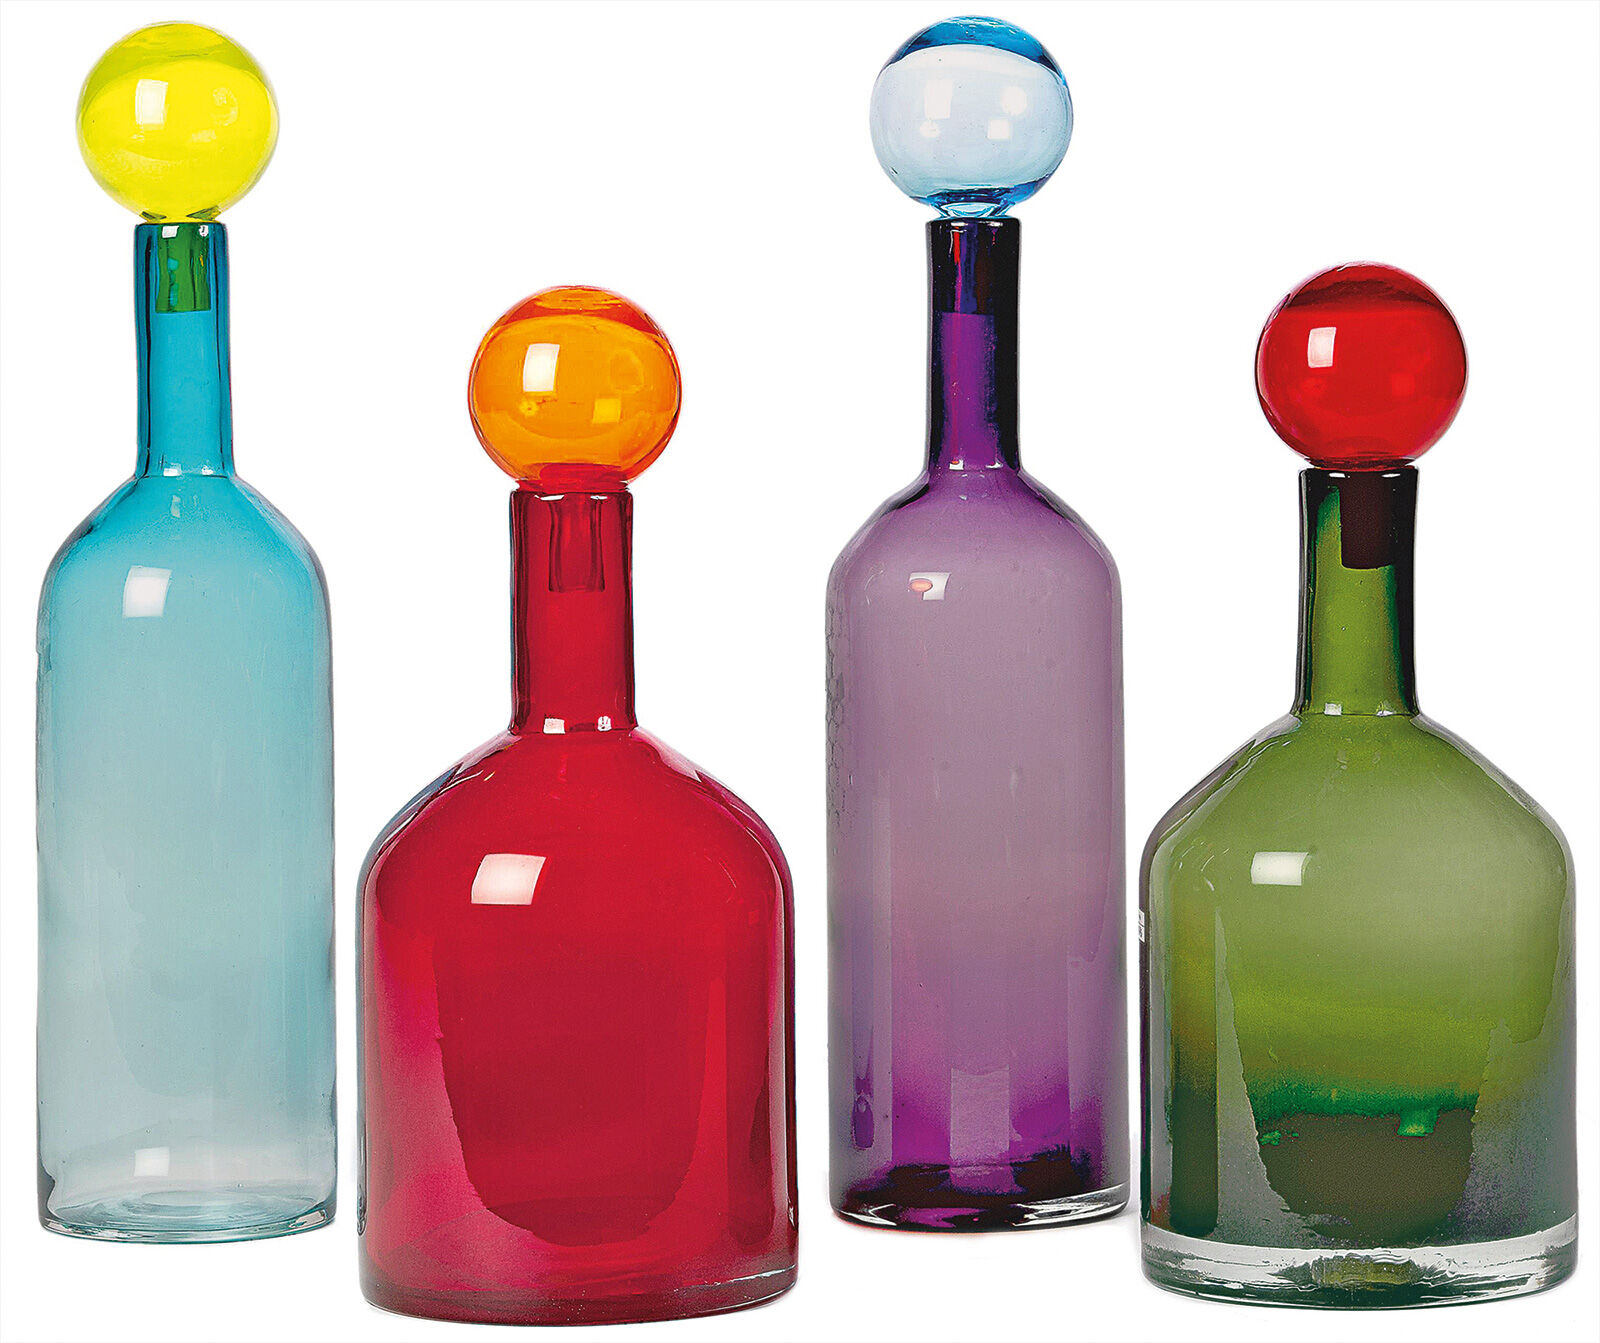 8-pcs bottle set "Bubbles & Bottles", colourful version by Pols Potten